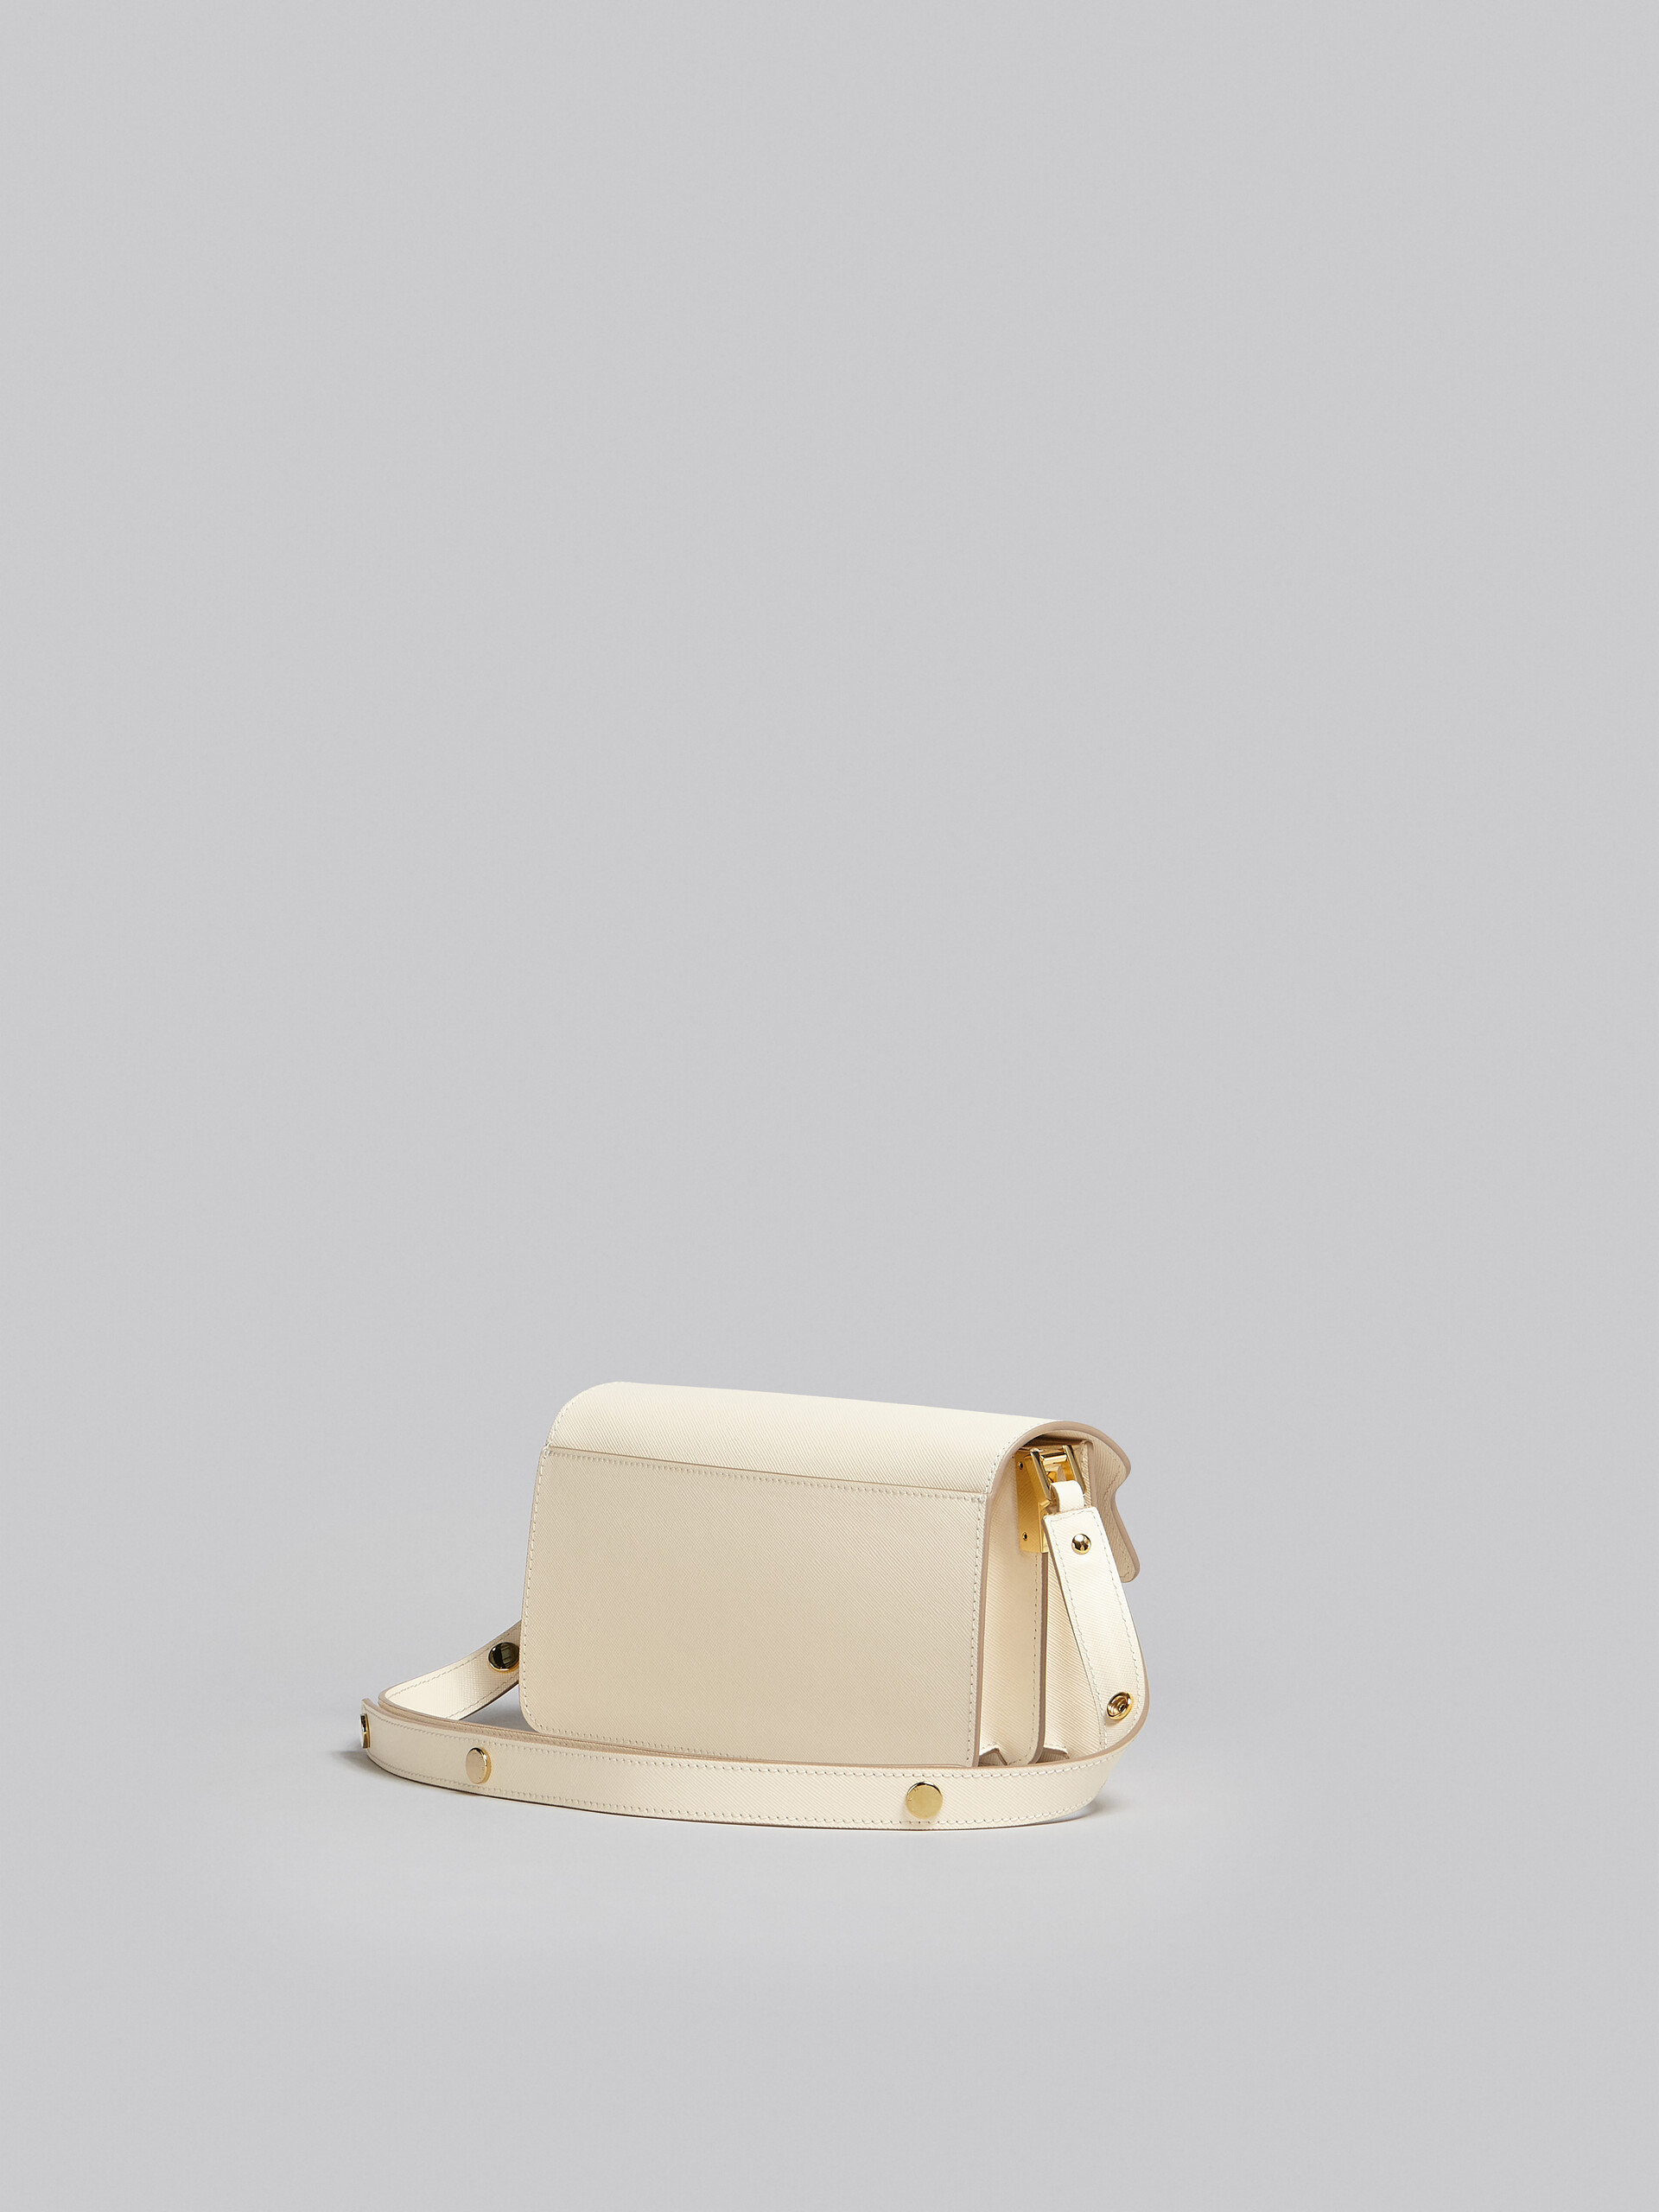 Tasche Trunk aus weißem Saffiano-Leder - Schultertaschen - Image 3